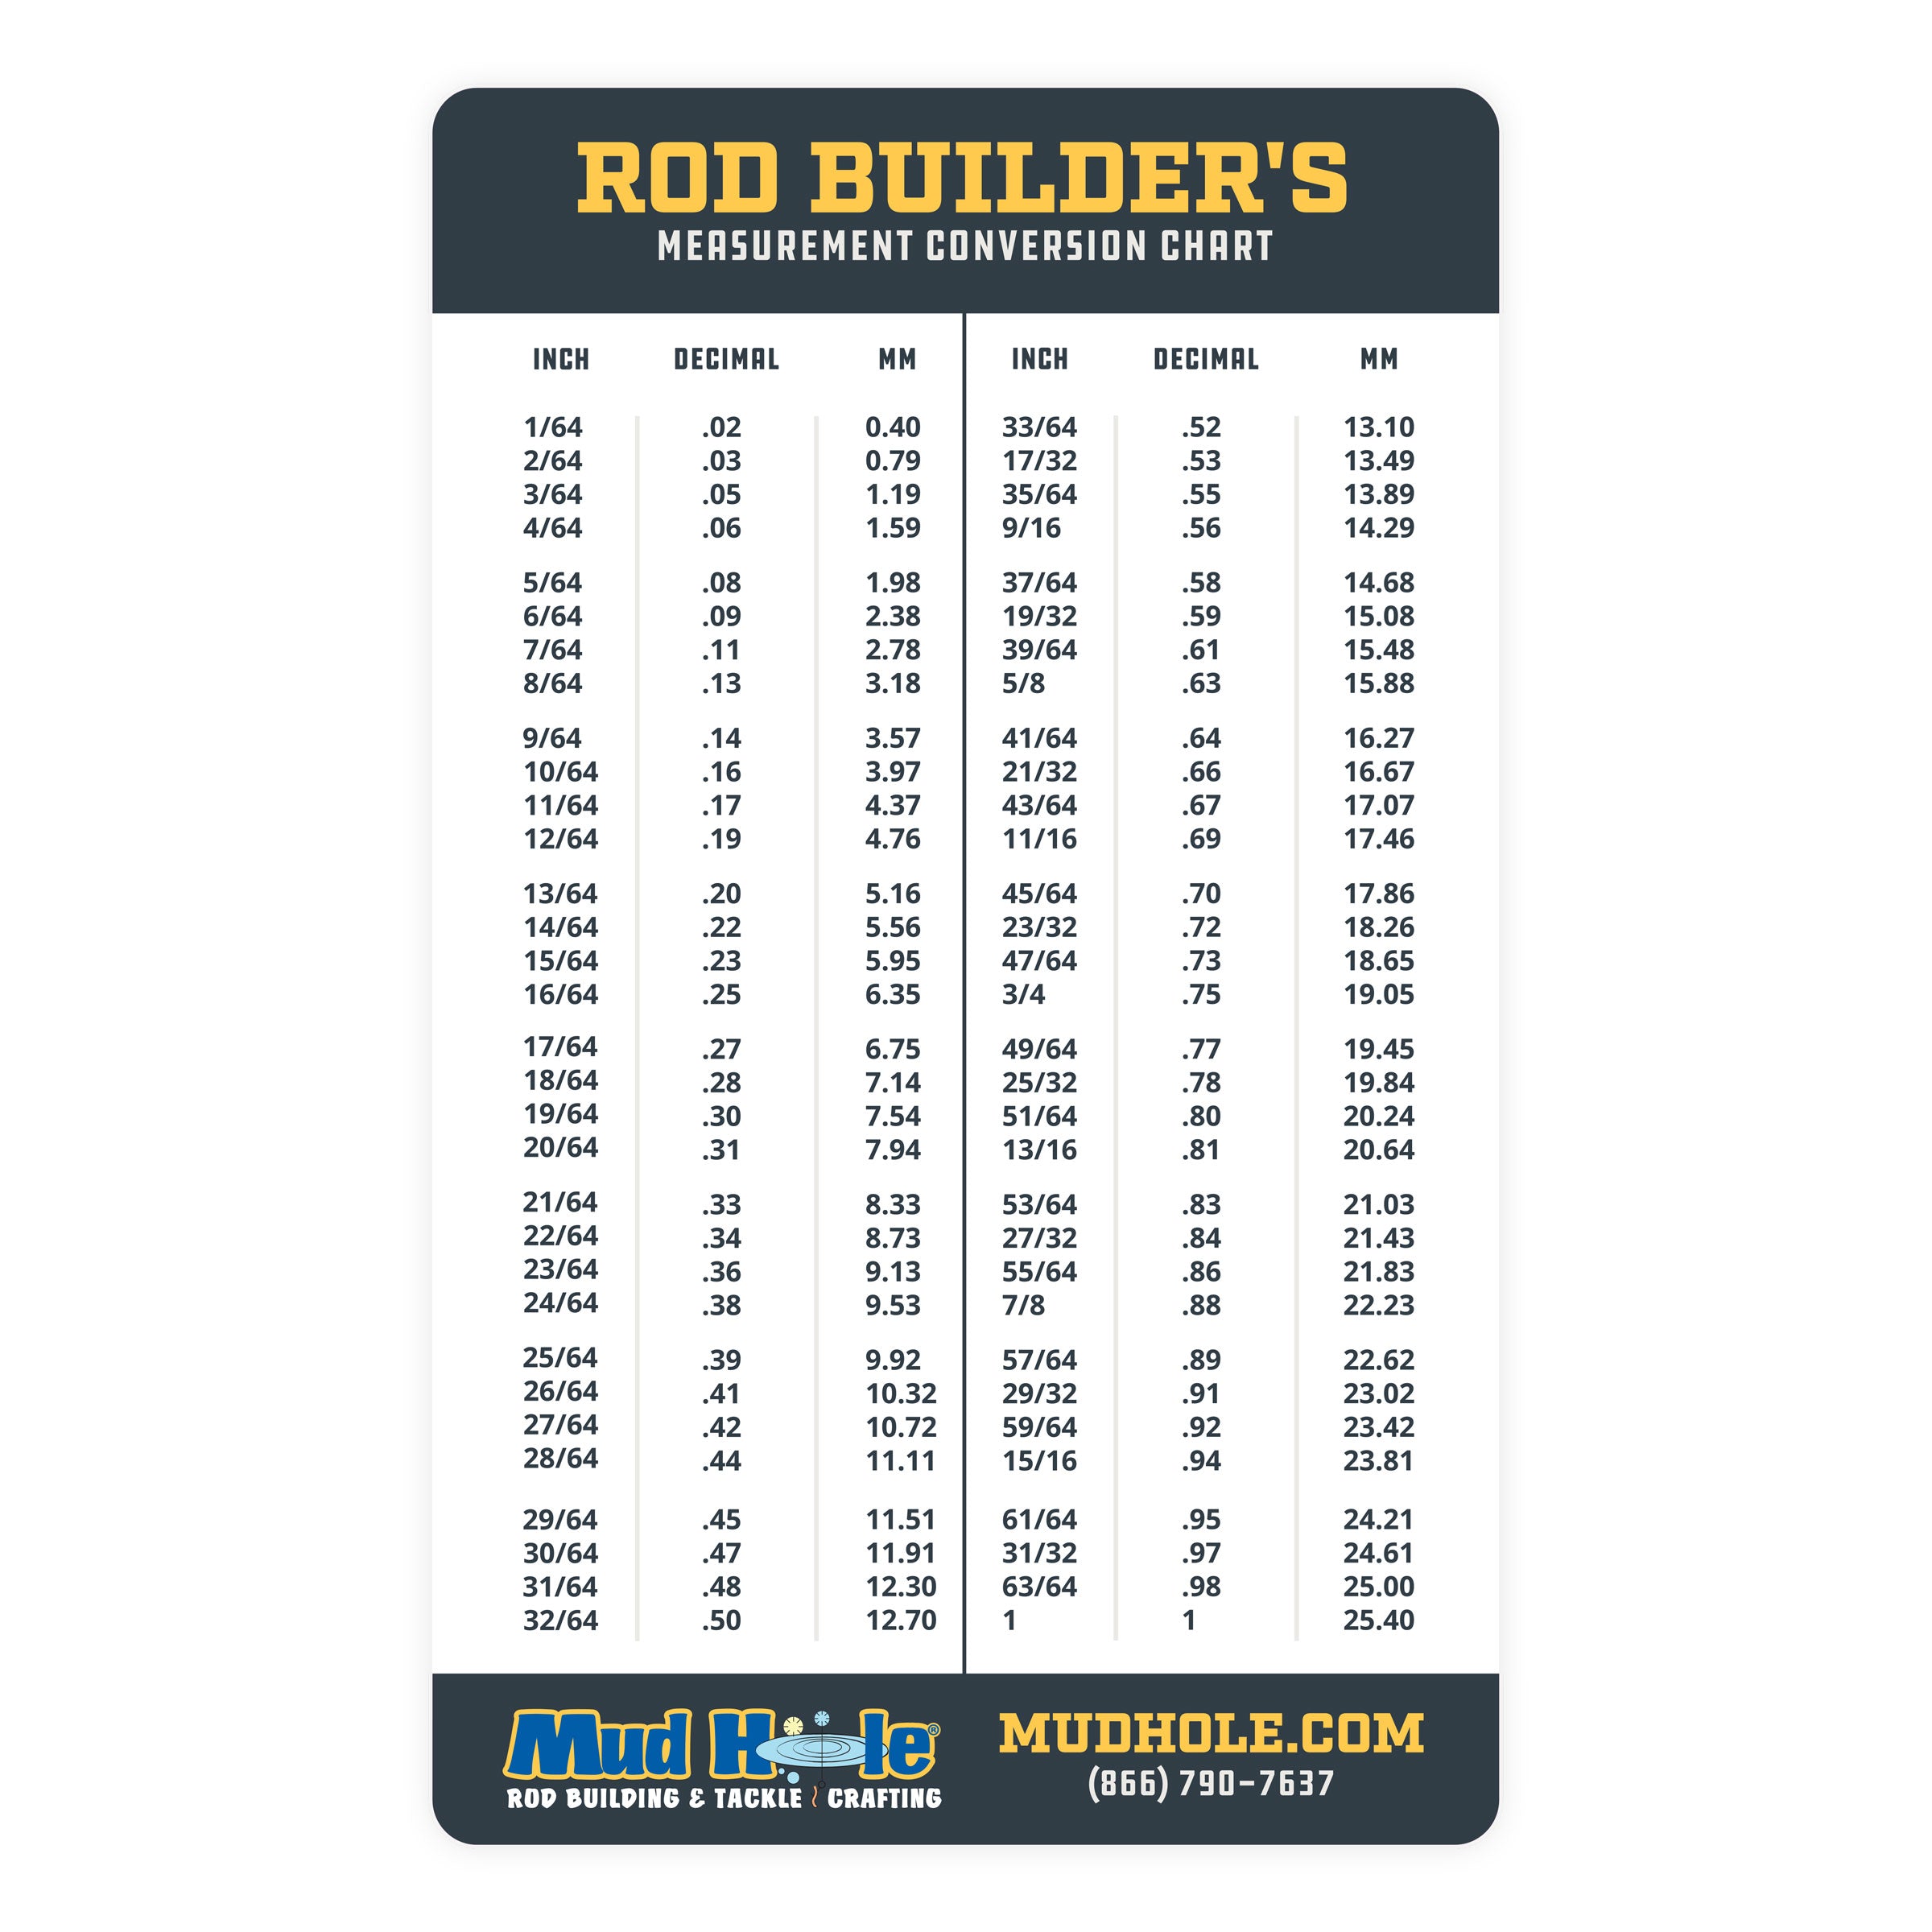 Rod Builder's Measurement Conversion Chart